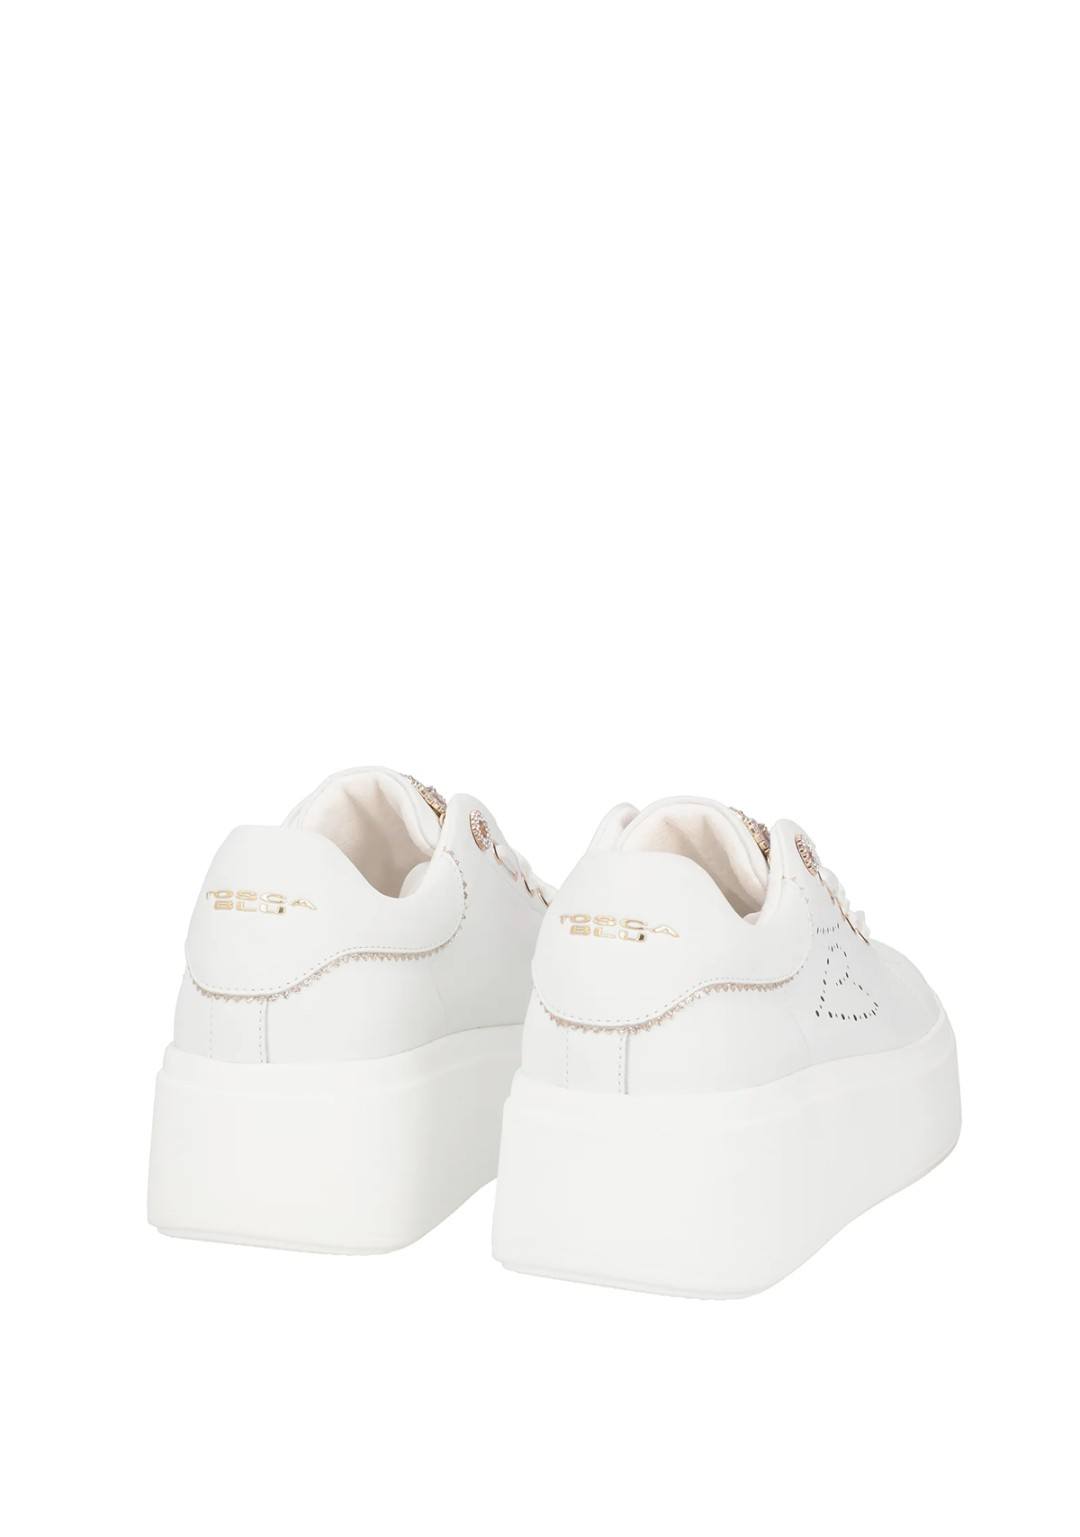 Tosca Blu - Sneakers Gioiello - Donna - SS2403S044